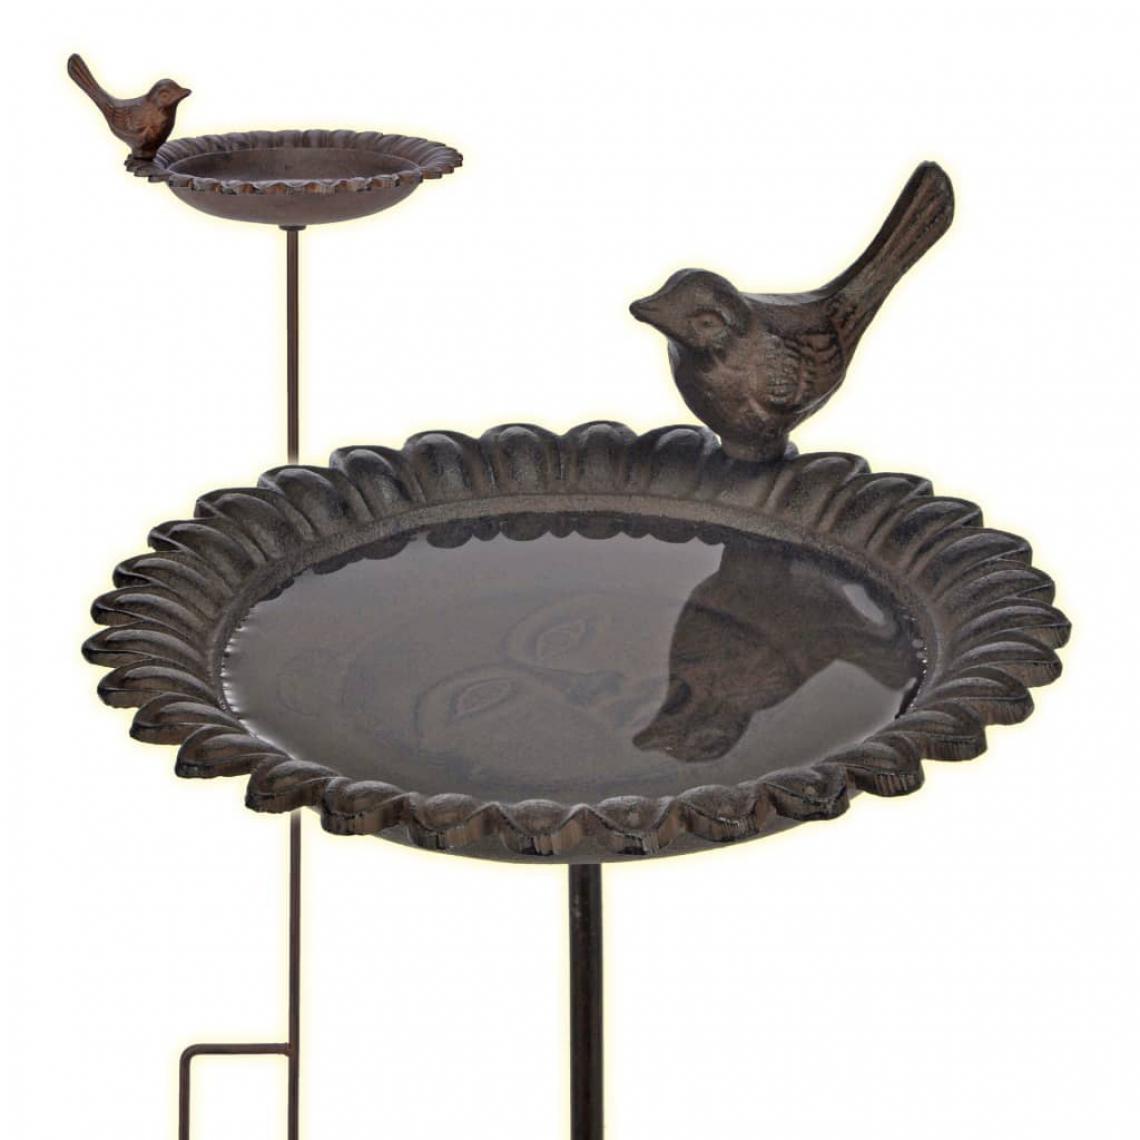 Decoshop26 - Fontaine pour oiseaux baignoire mangeoire en fonte marron DEC020802 - Accessoires basse-cour